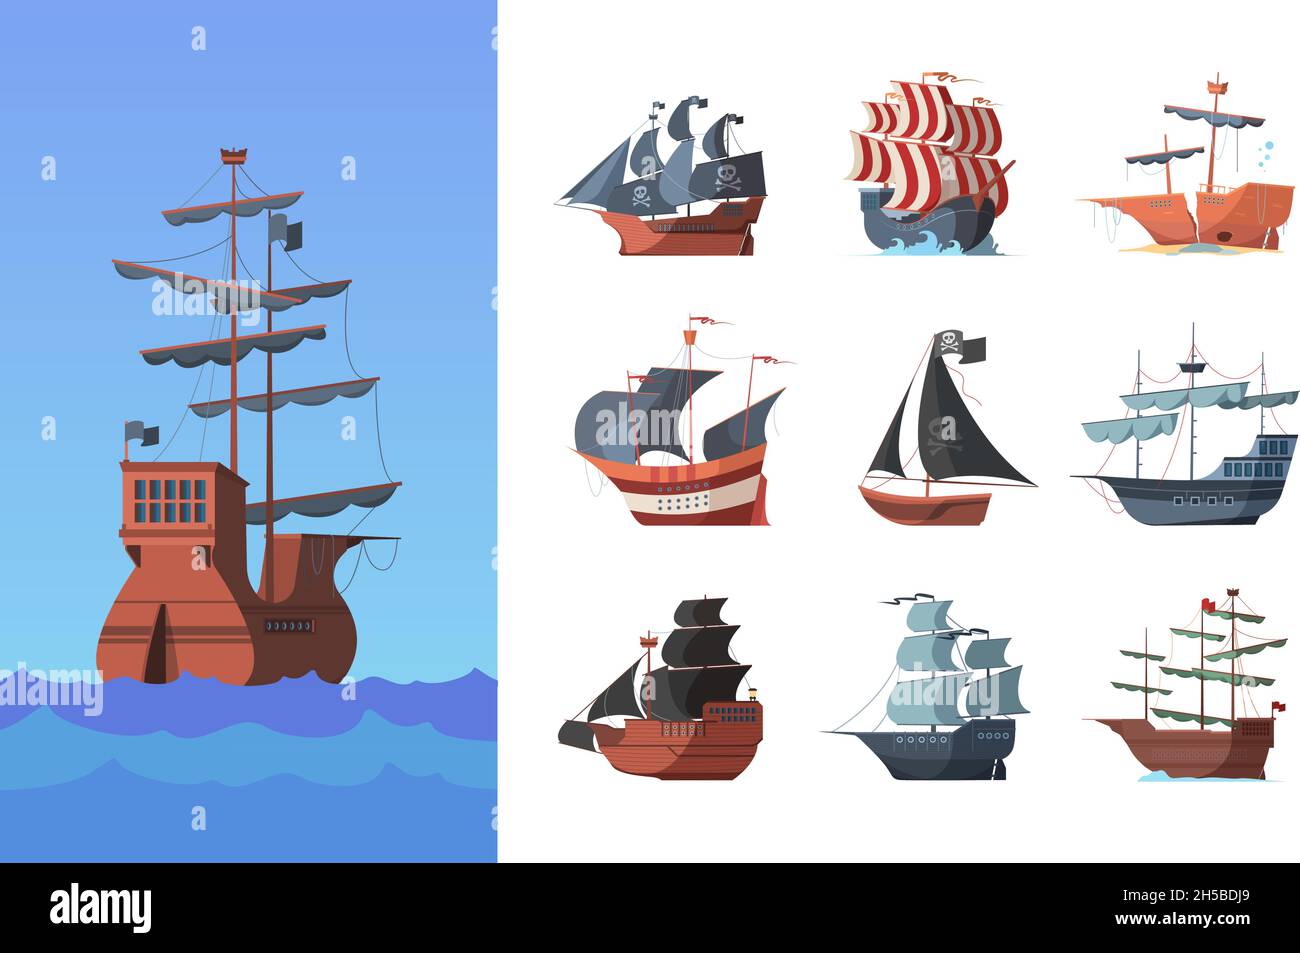 Piratenboote. Alte Schiffssegel traditionelle Schiff Piraten Symbole grellen Vektor Illustrationen Sammlung Set Stock Vektor